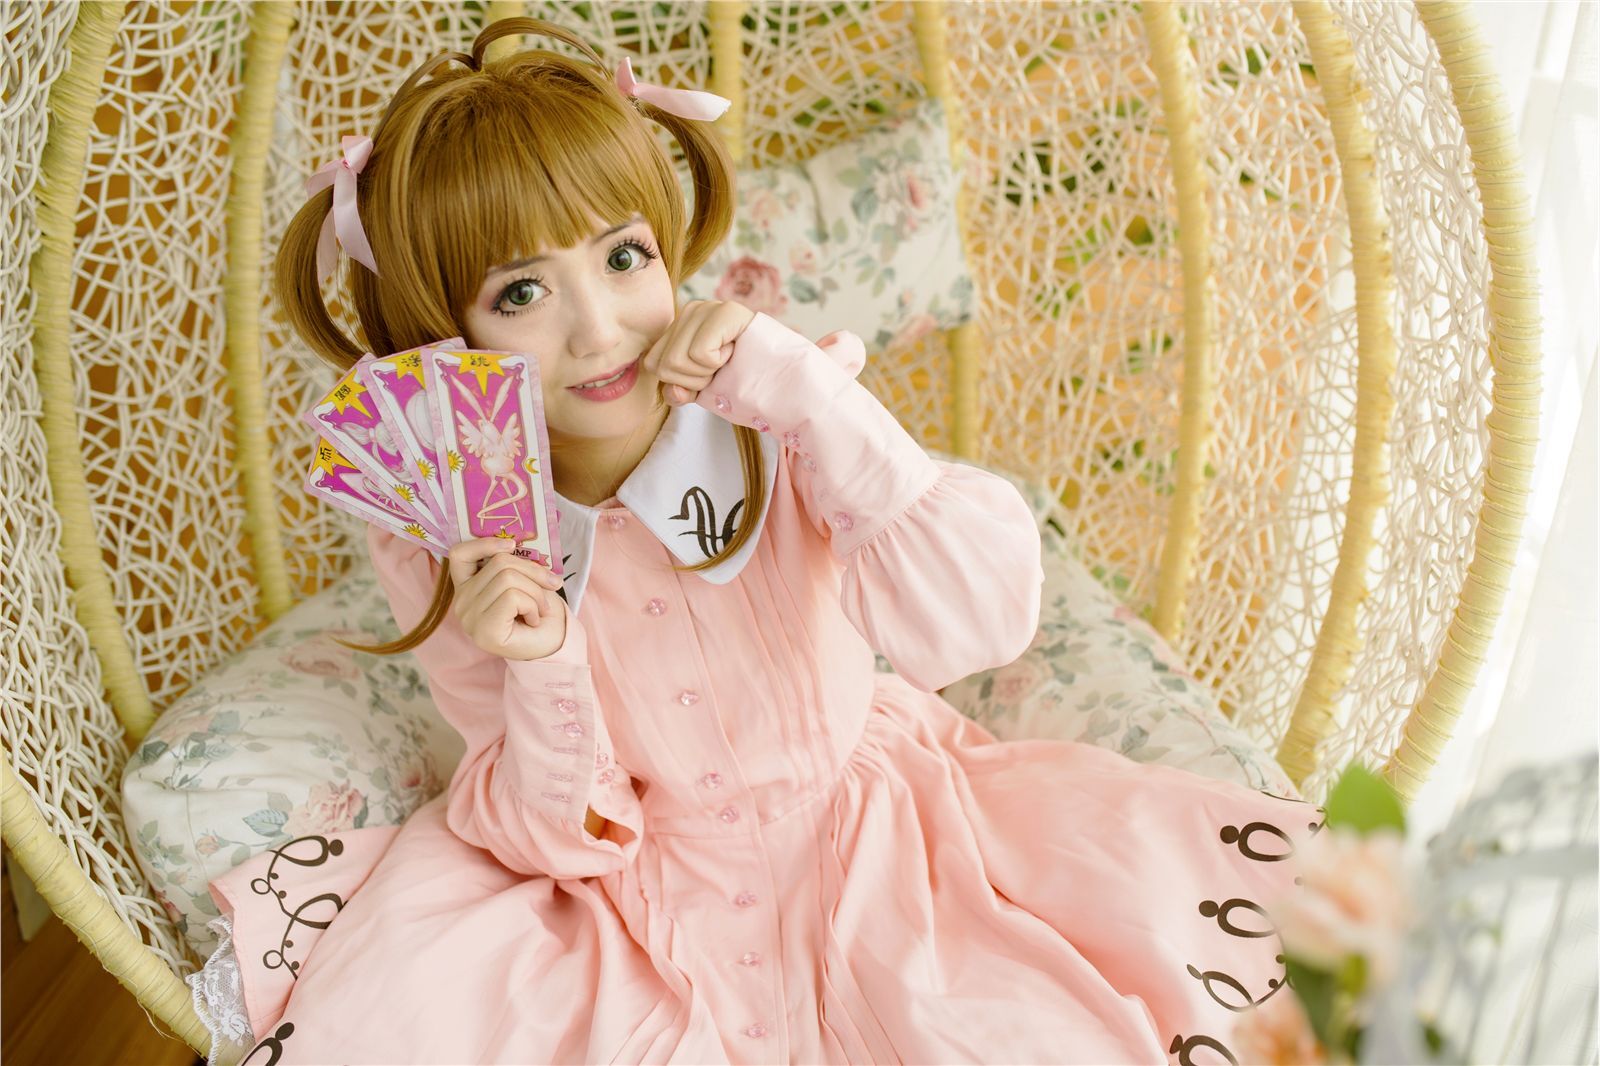 Cos positive Sakura, let's play cards